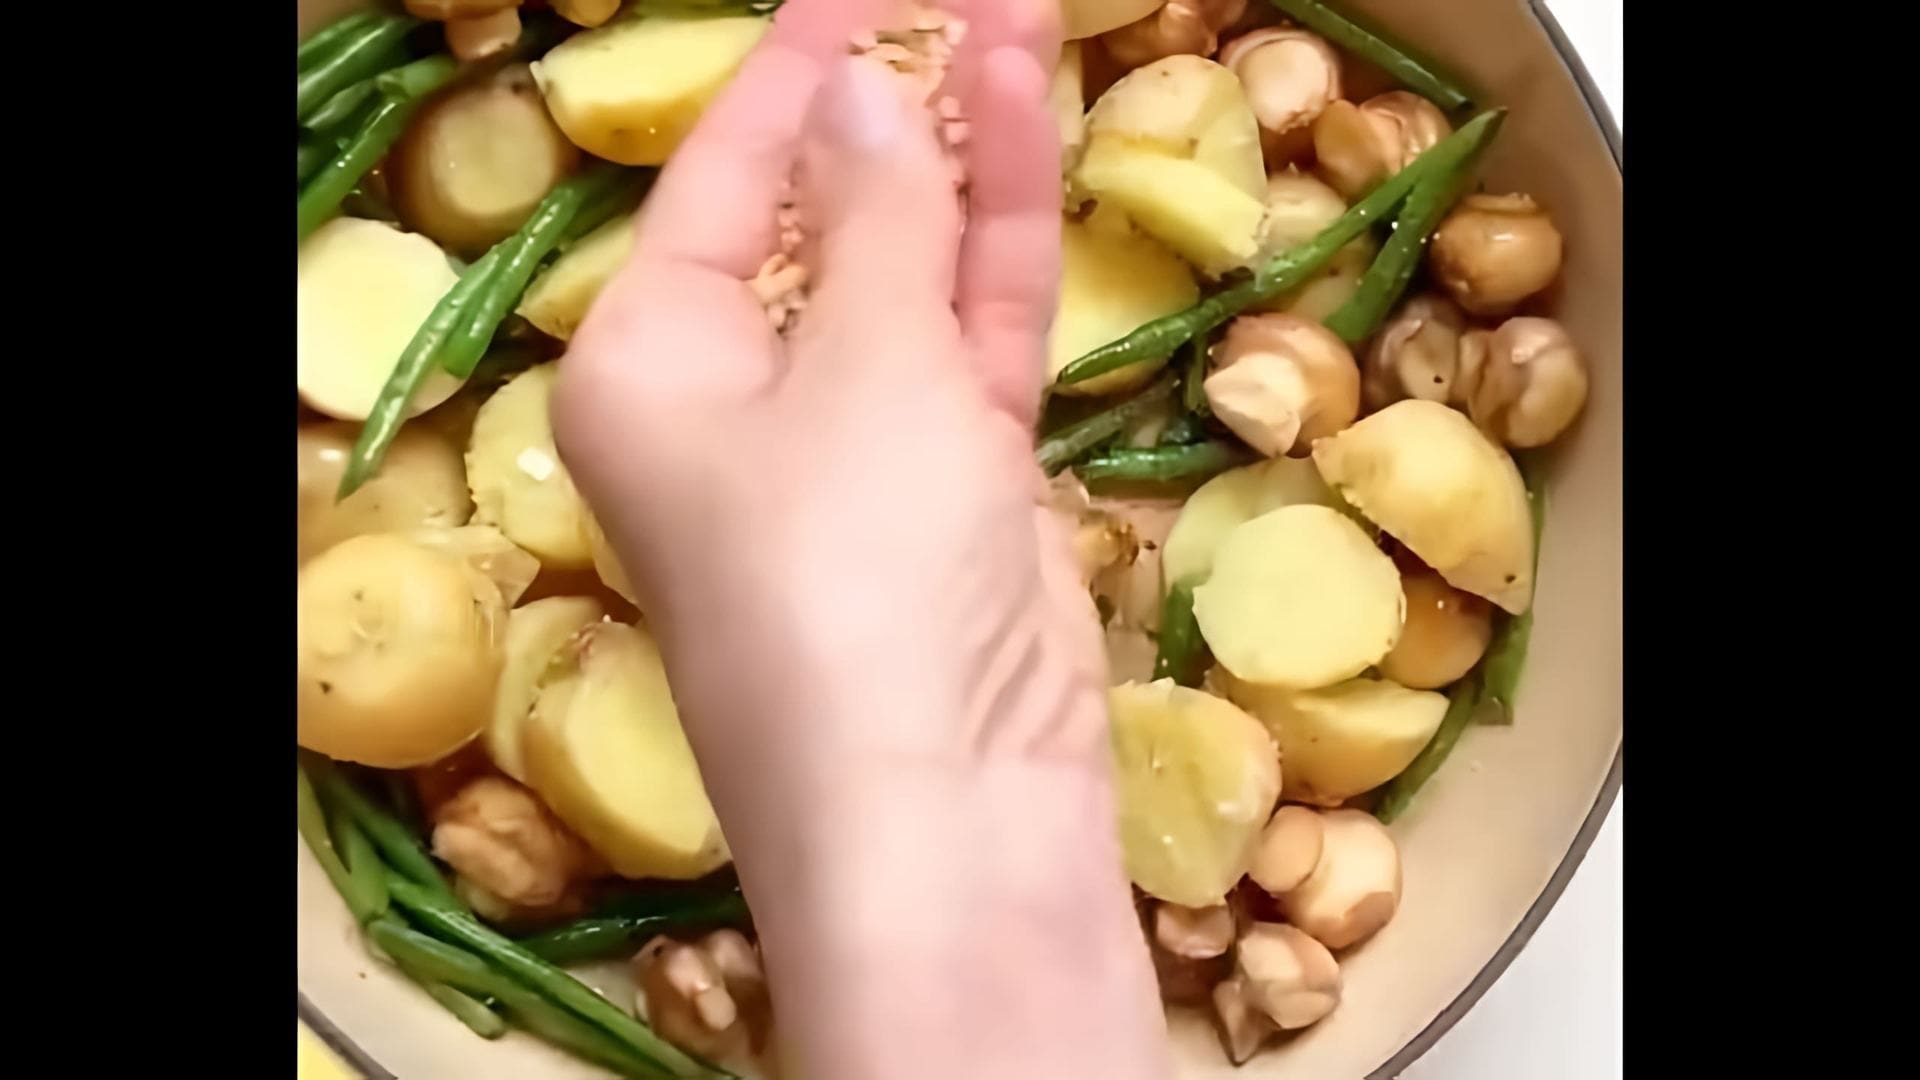 В этом видео демонстрируется процесс приготовления вкусного и полезного блюда - картофеля с грибами и стручковой фасолью